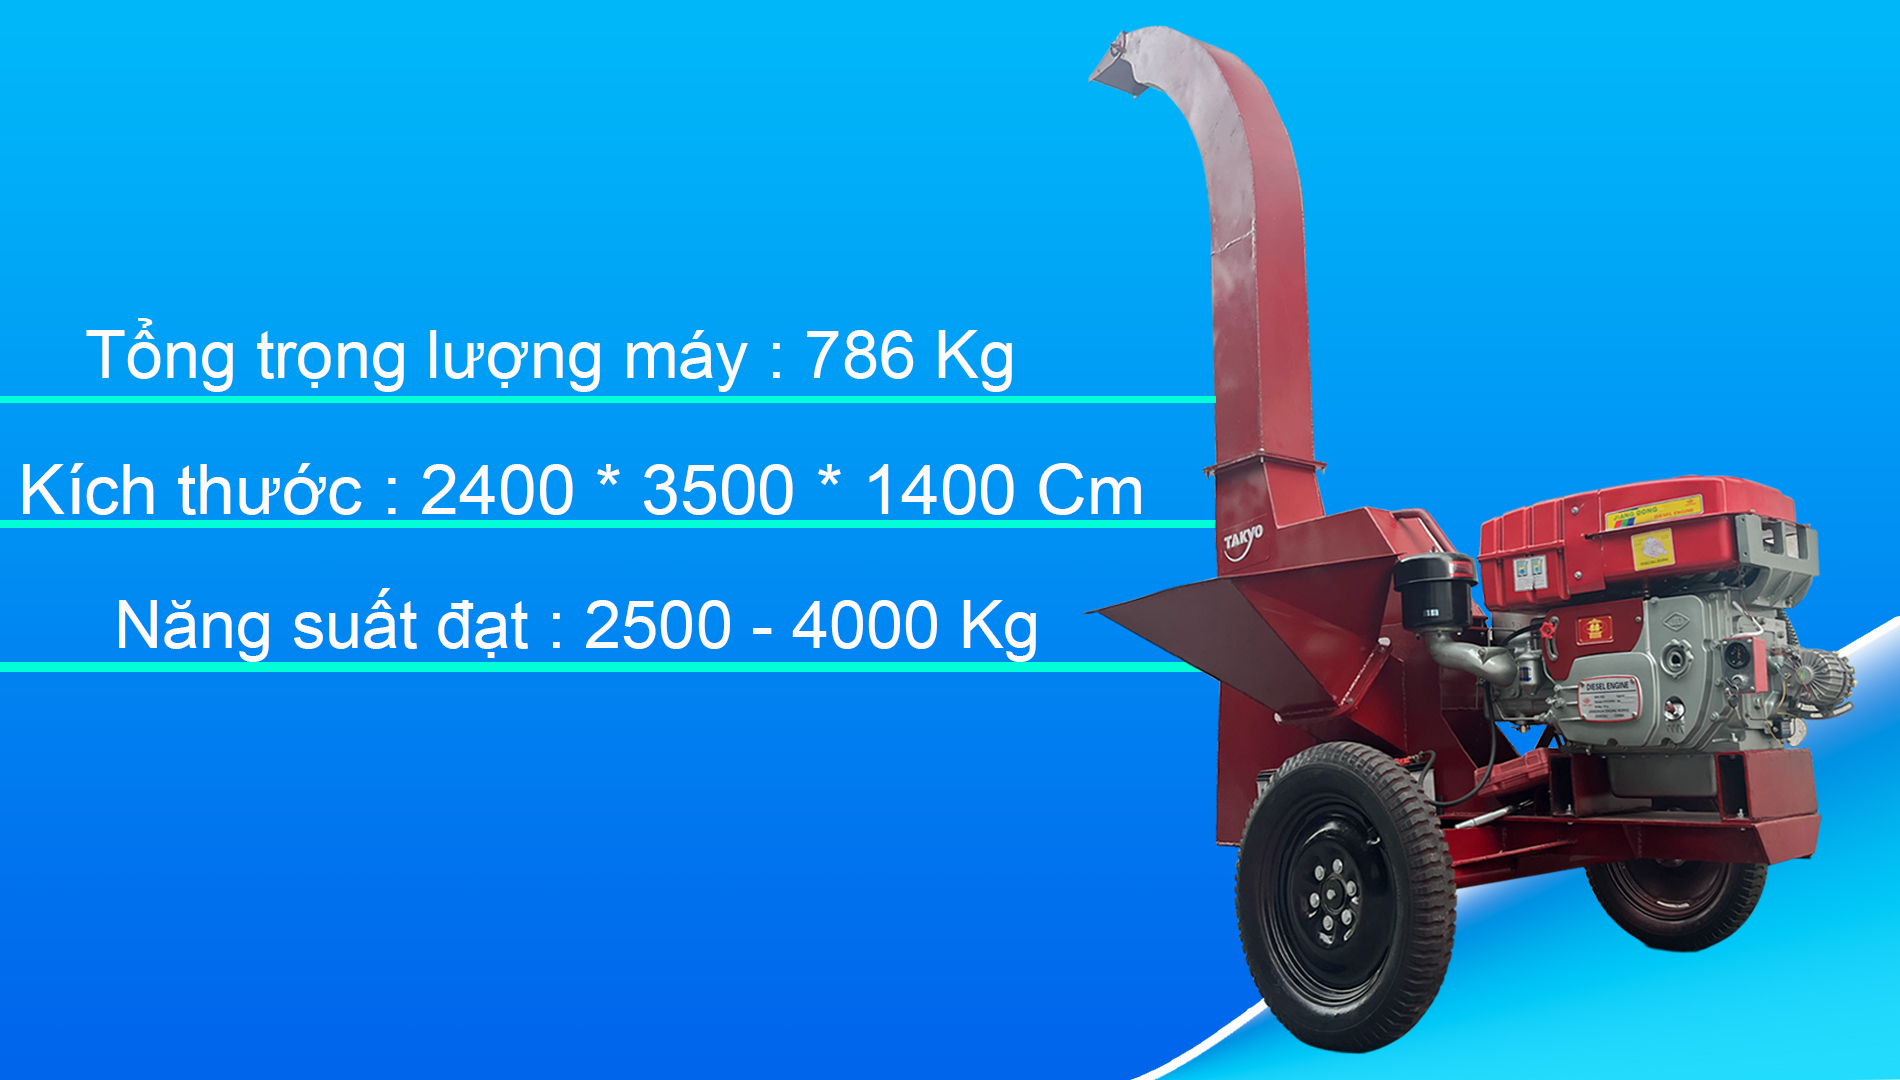 Thông số trọng tải máy băm cây Takyo TK 420